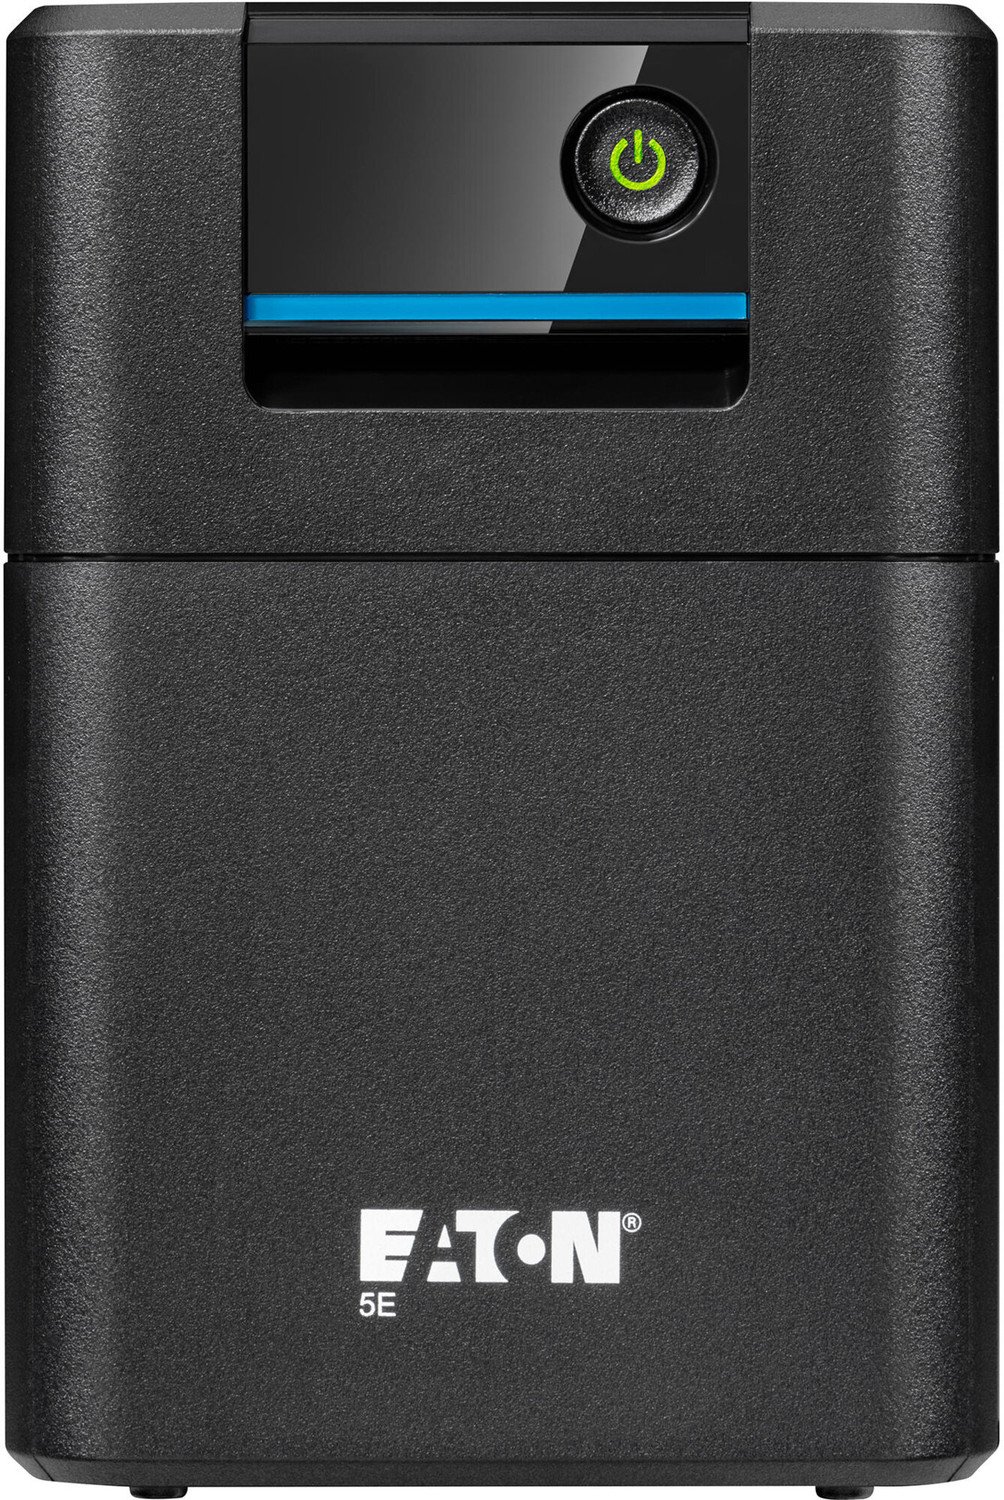 Eaton 5E 700 IEC G2 - 5E700I